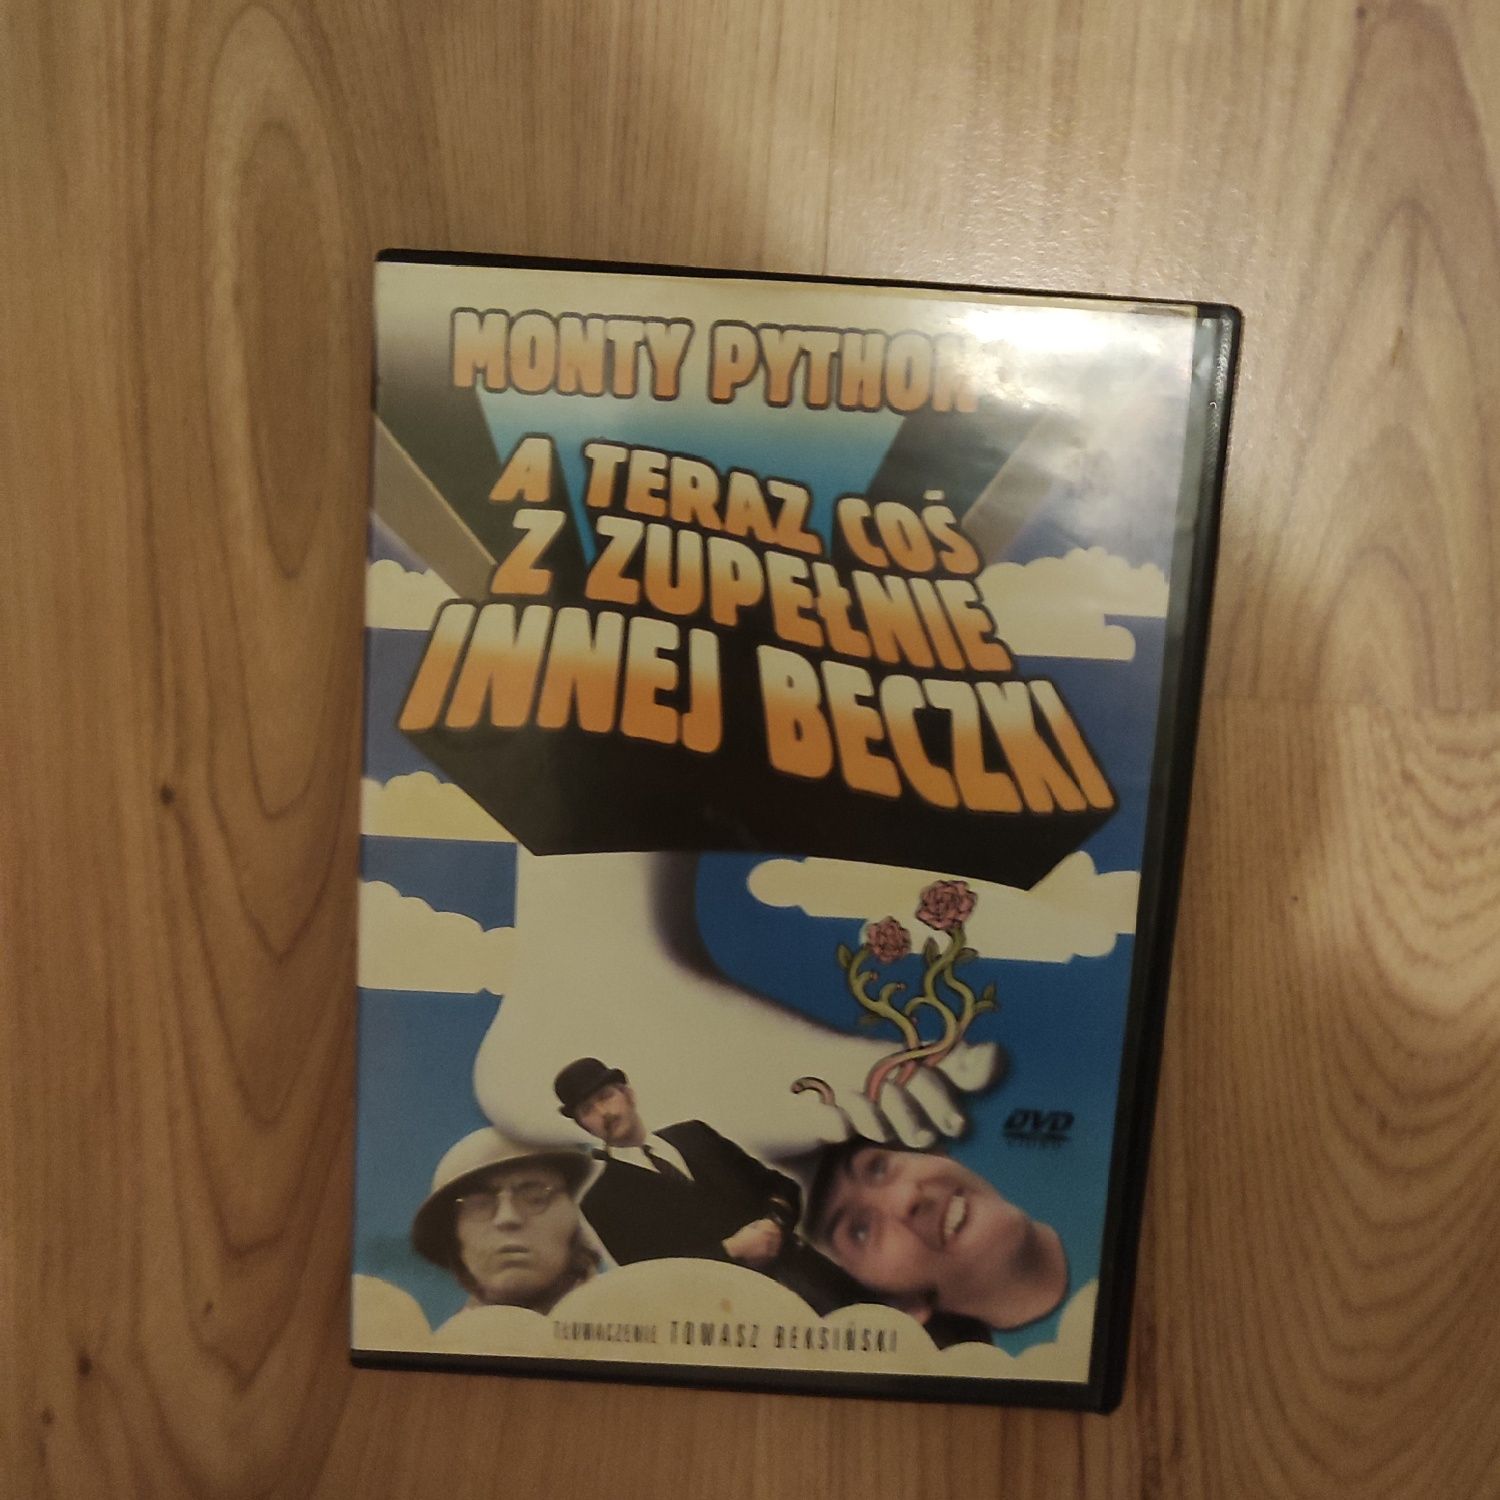 Film DVD Monty Python - A teraz coś z zupełnie innej beczki
Stan bardz